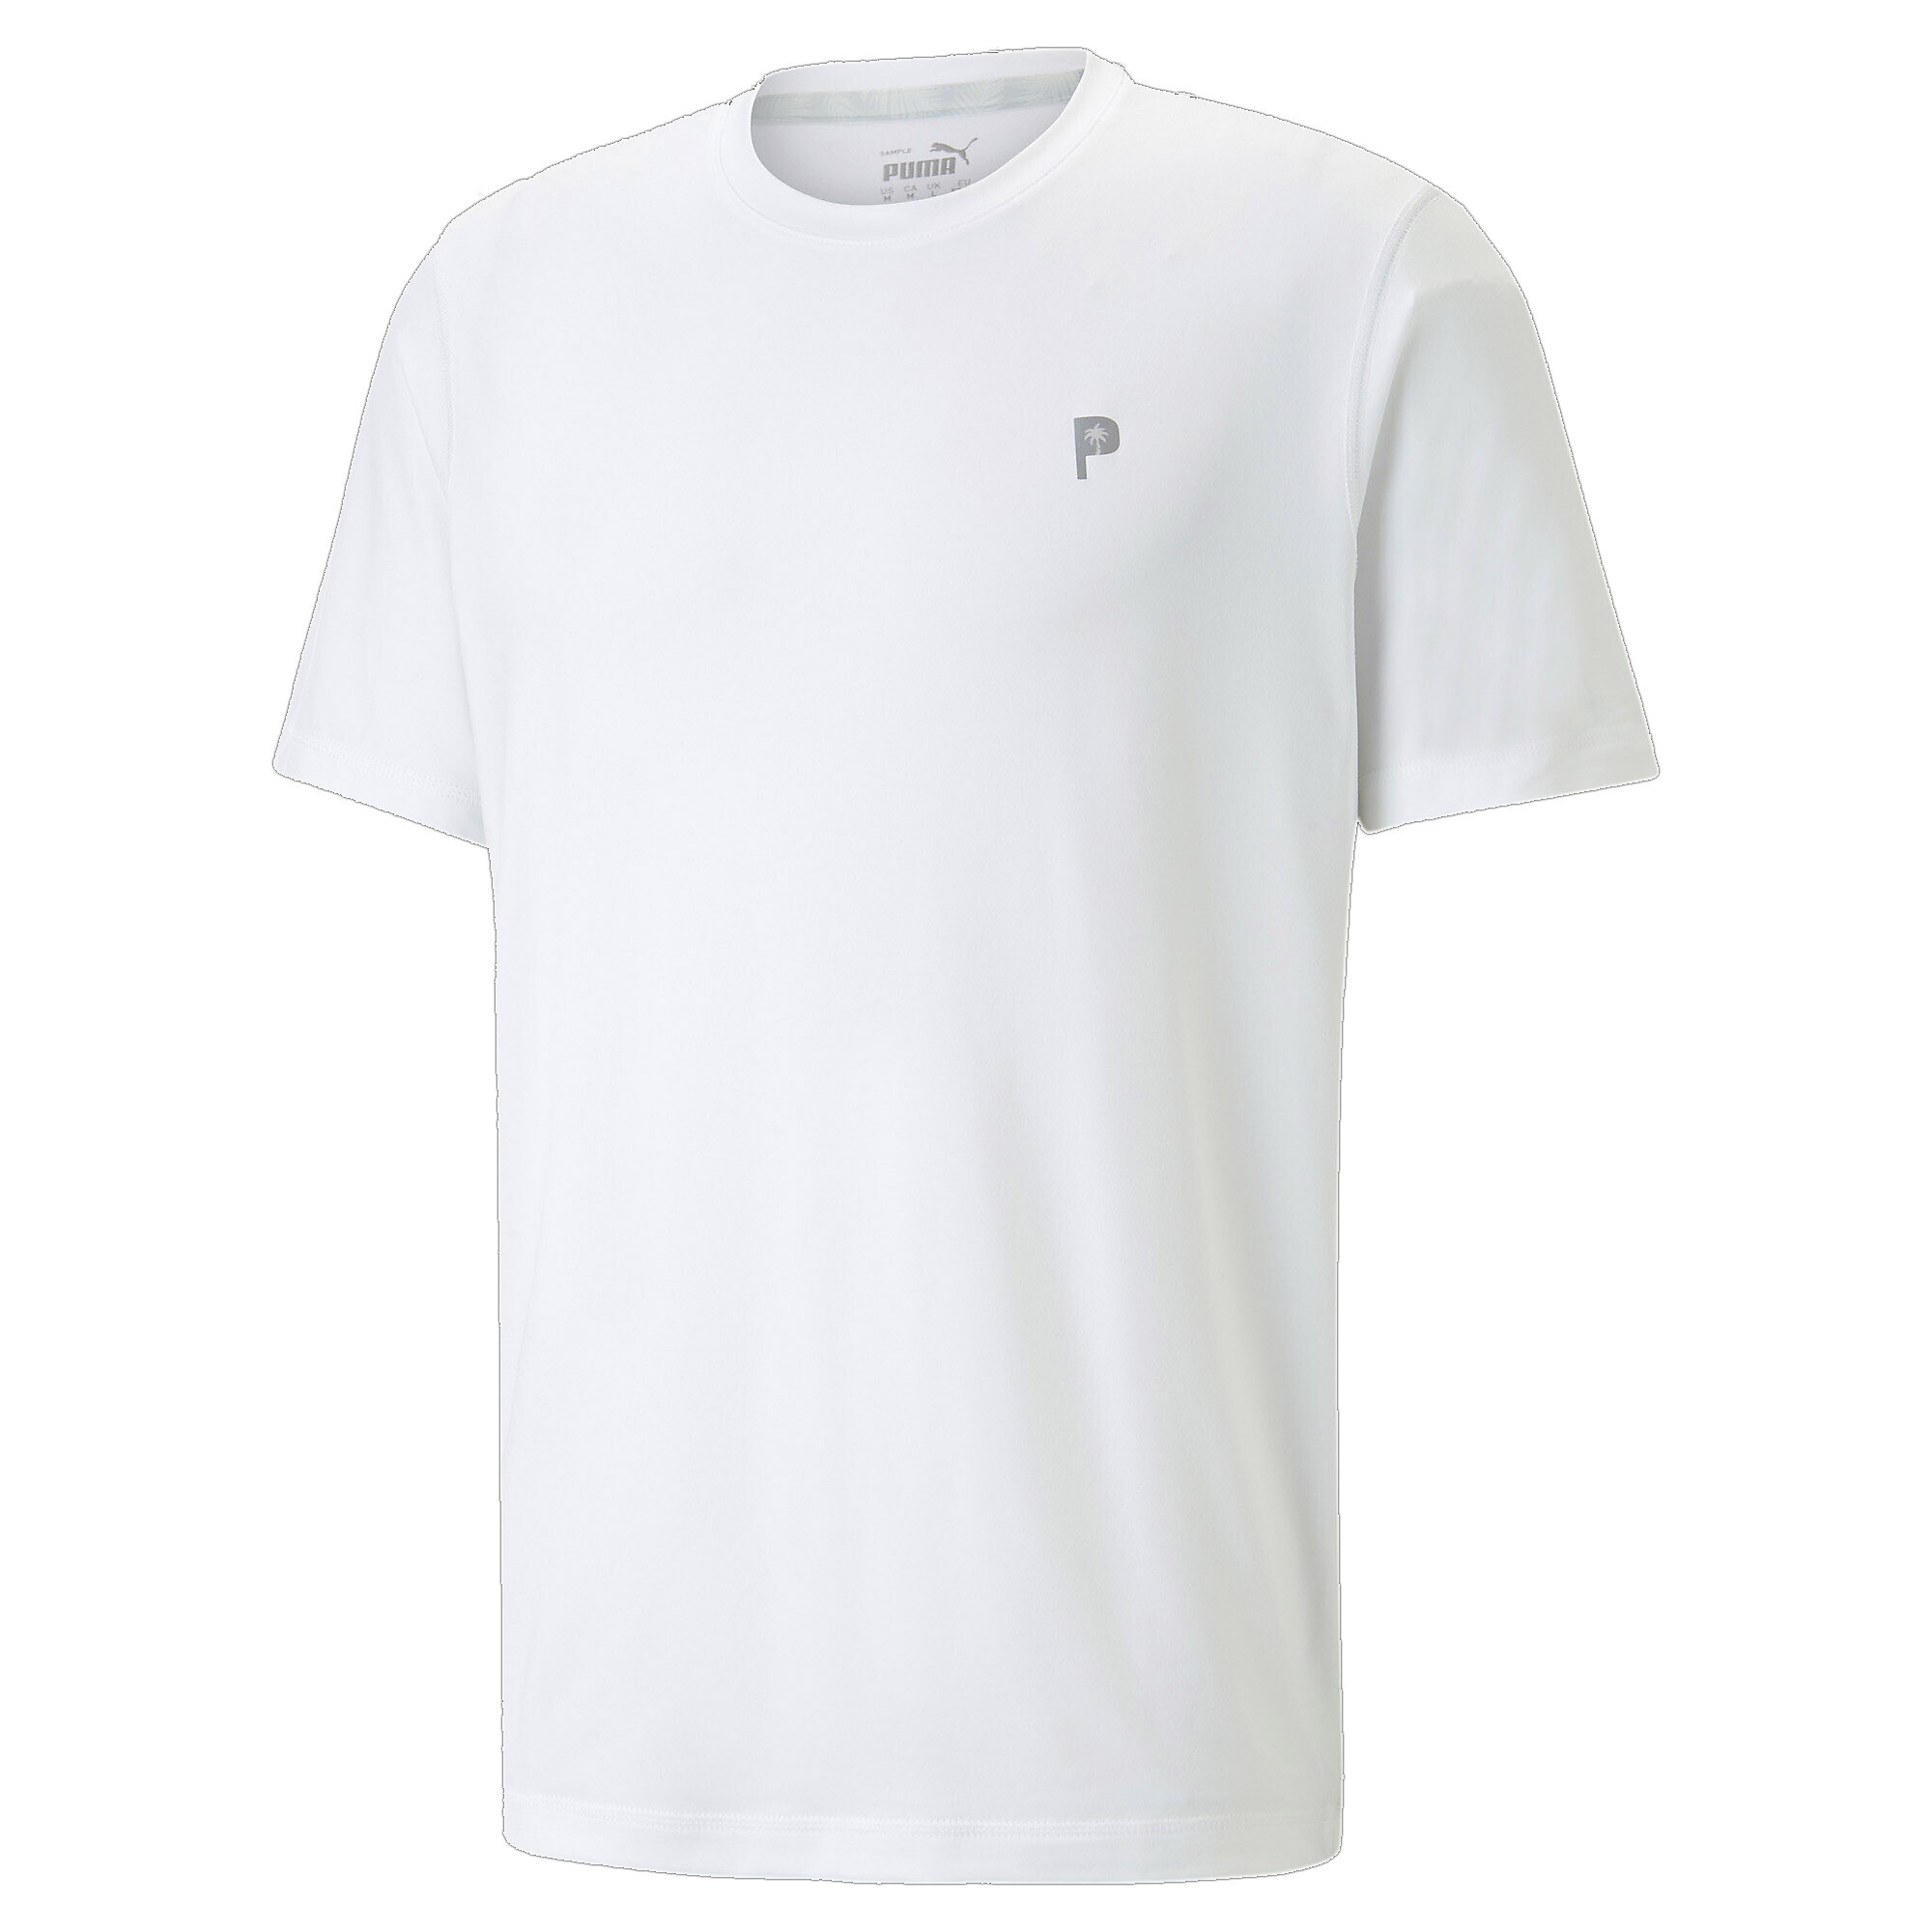 30%OFF！＜プーマ公式通販＞ プーマ メンズ ゴルフ PUMA x PTC 半袖 Tシャツ メンズ Bright White ｜PUMA.com画像